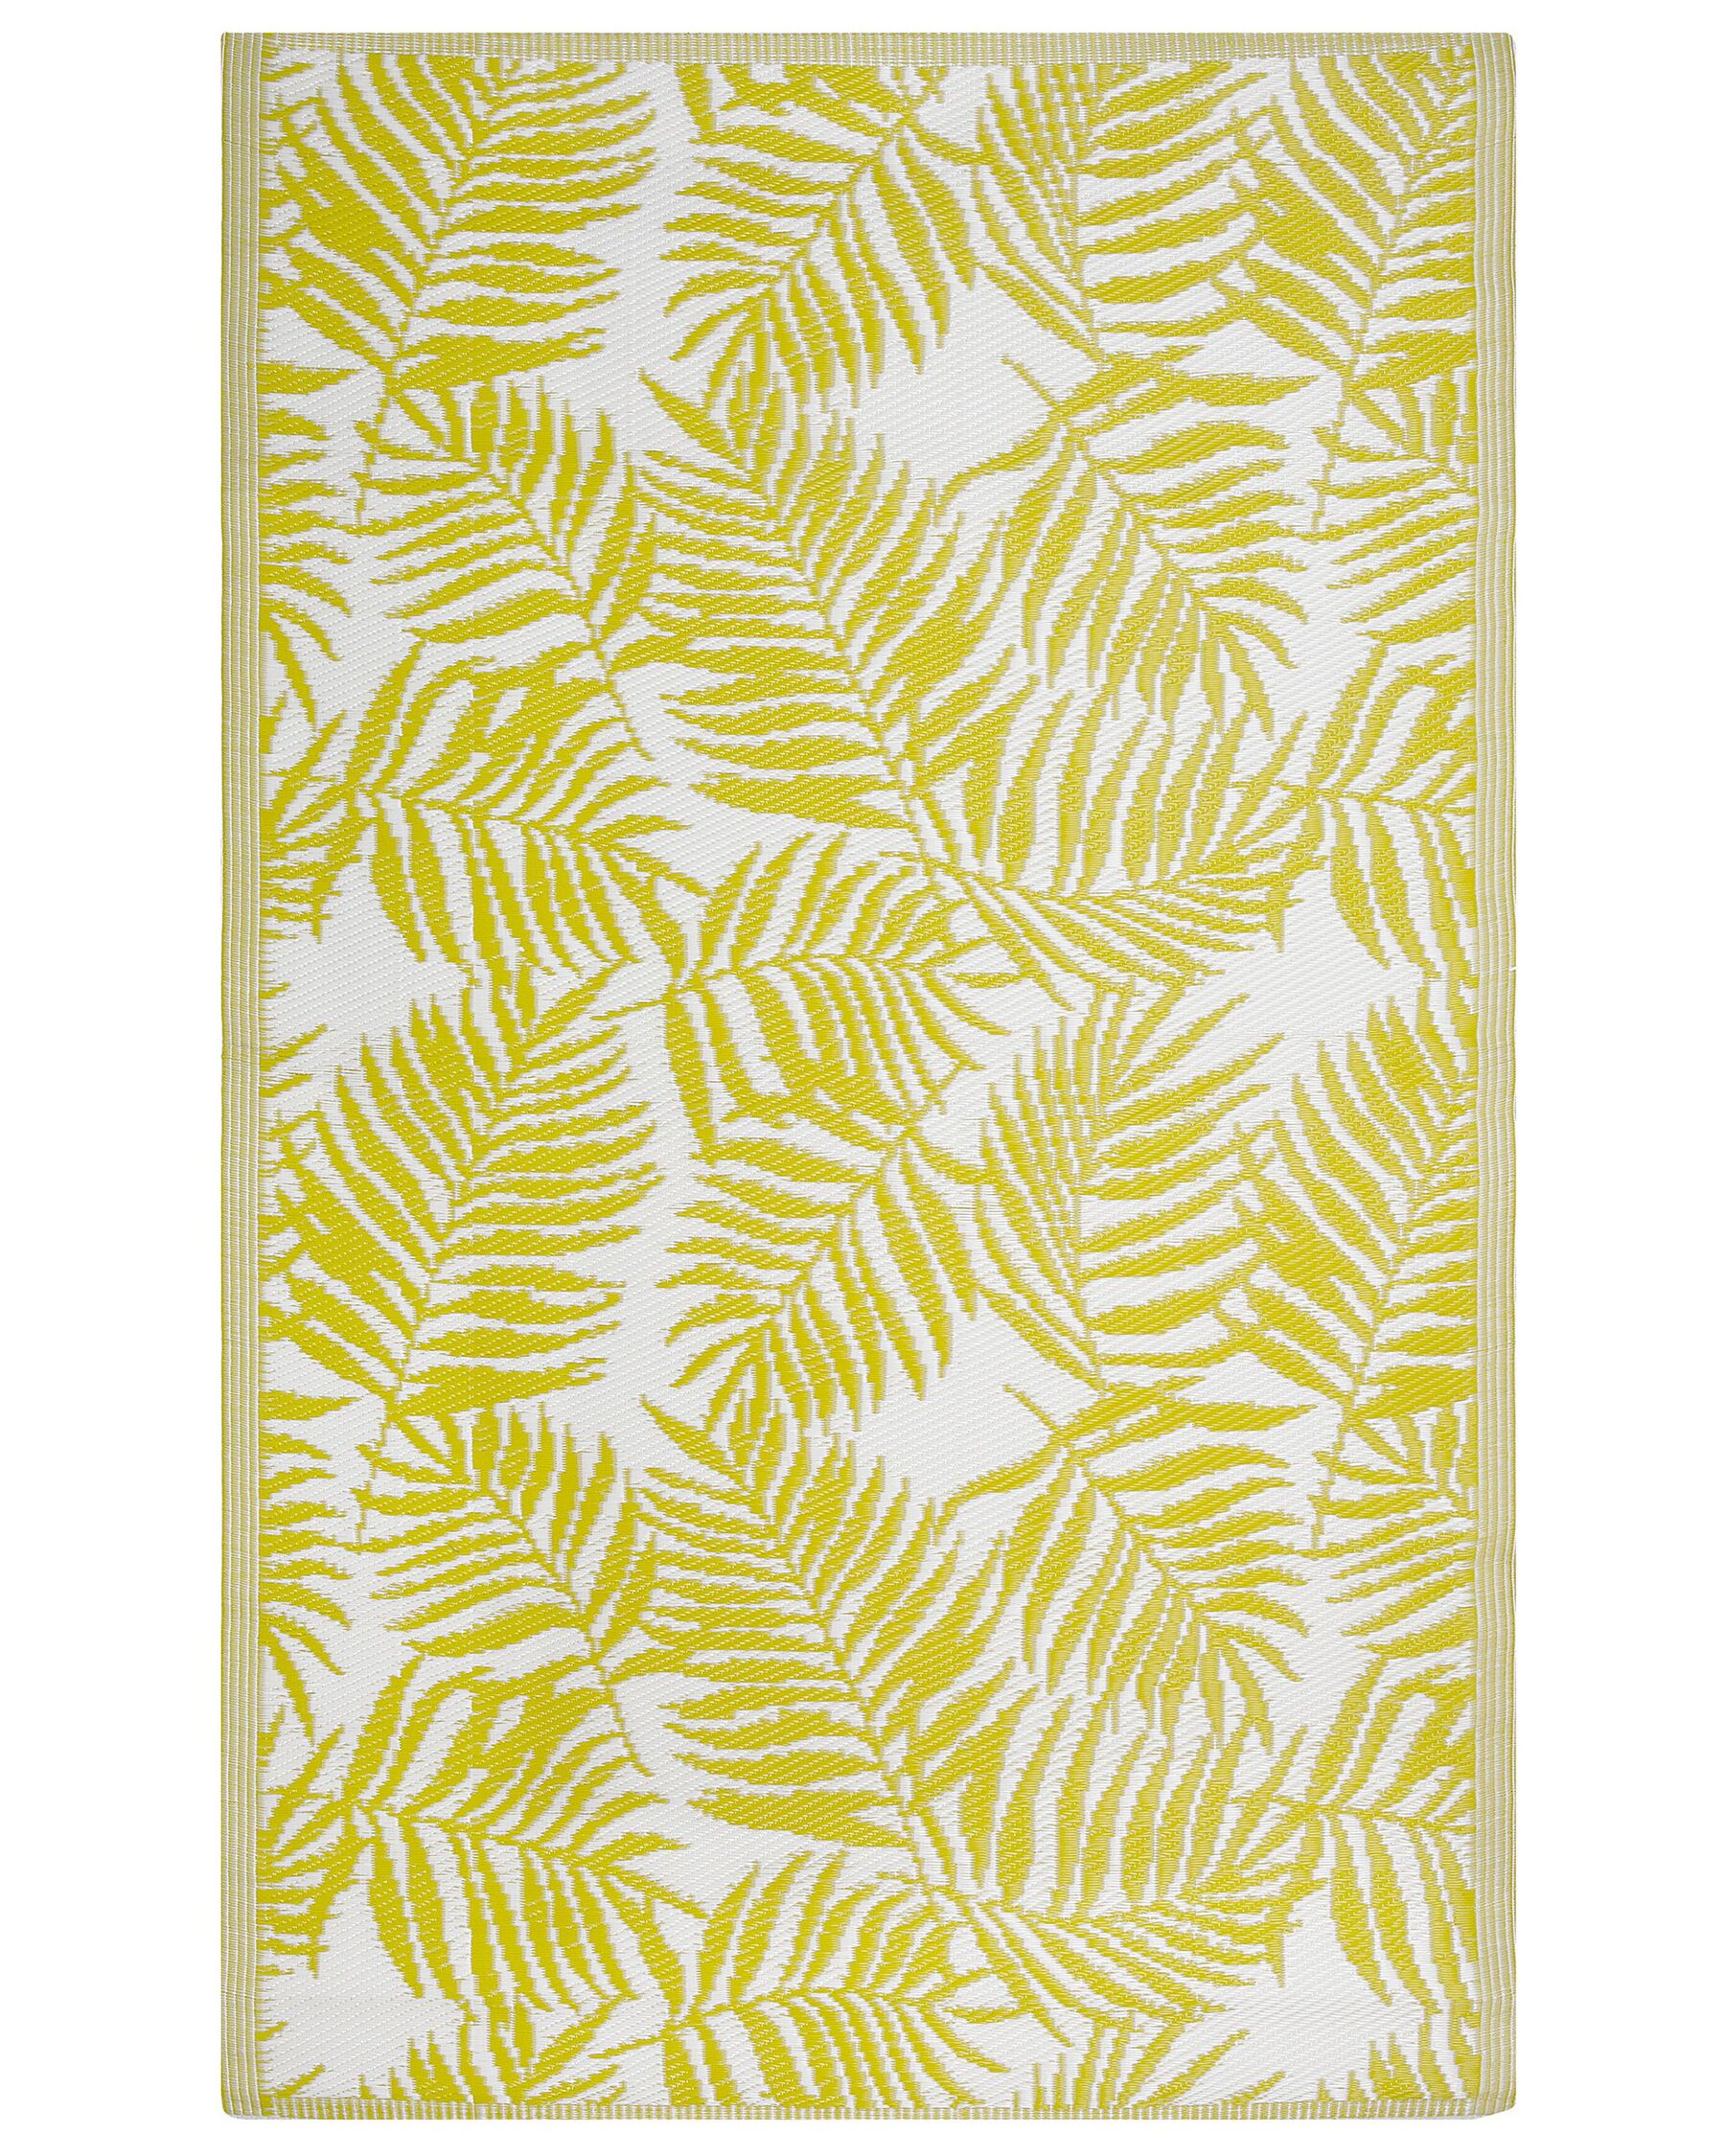 Oboustranný venkovní koberec s motivem palmových listů v žluté barvě 120 x 180 cm KOTA_716139